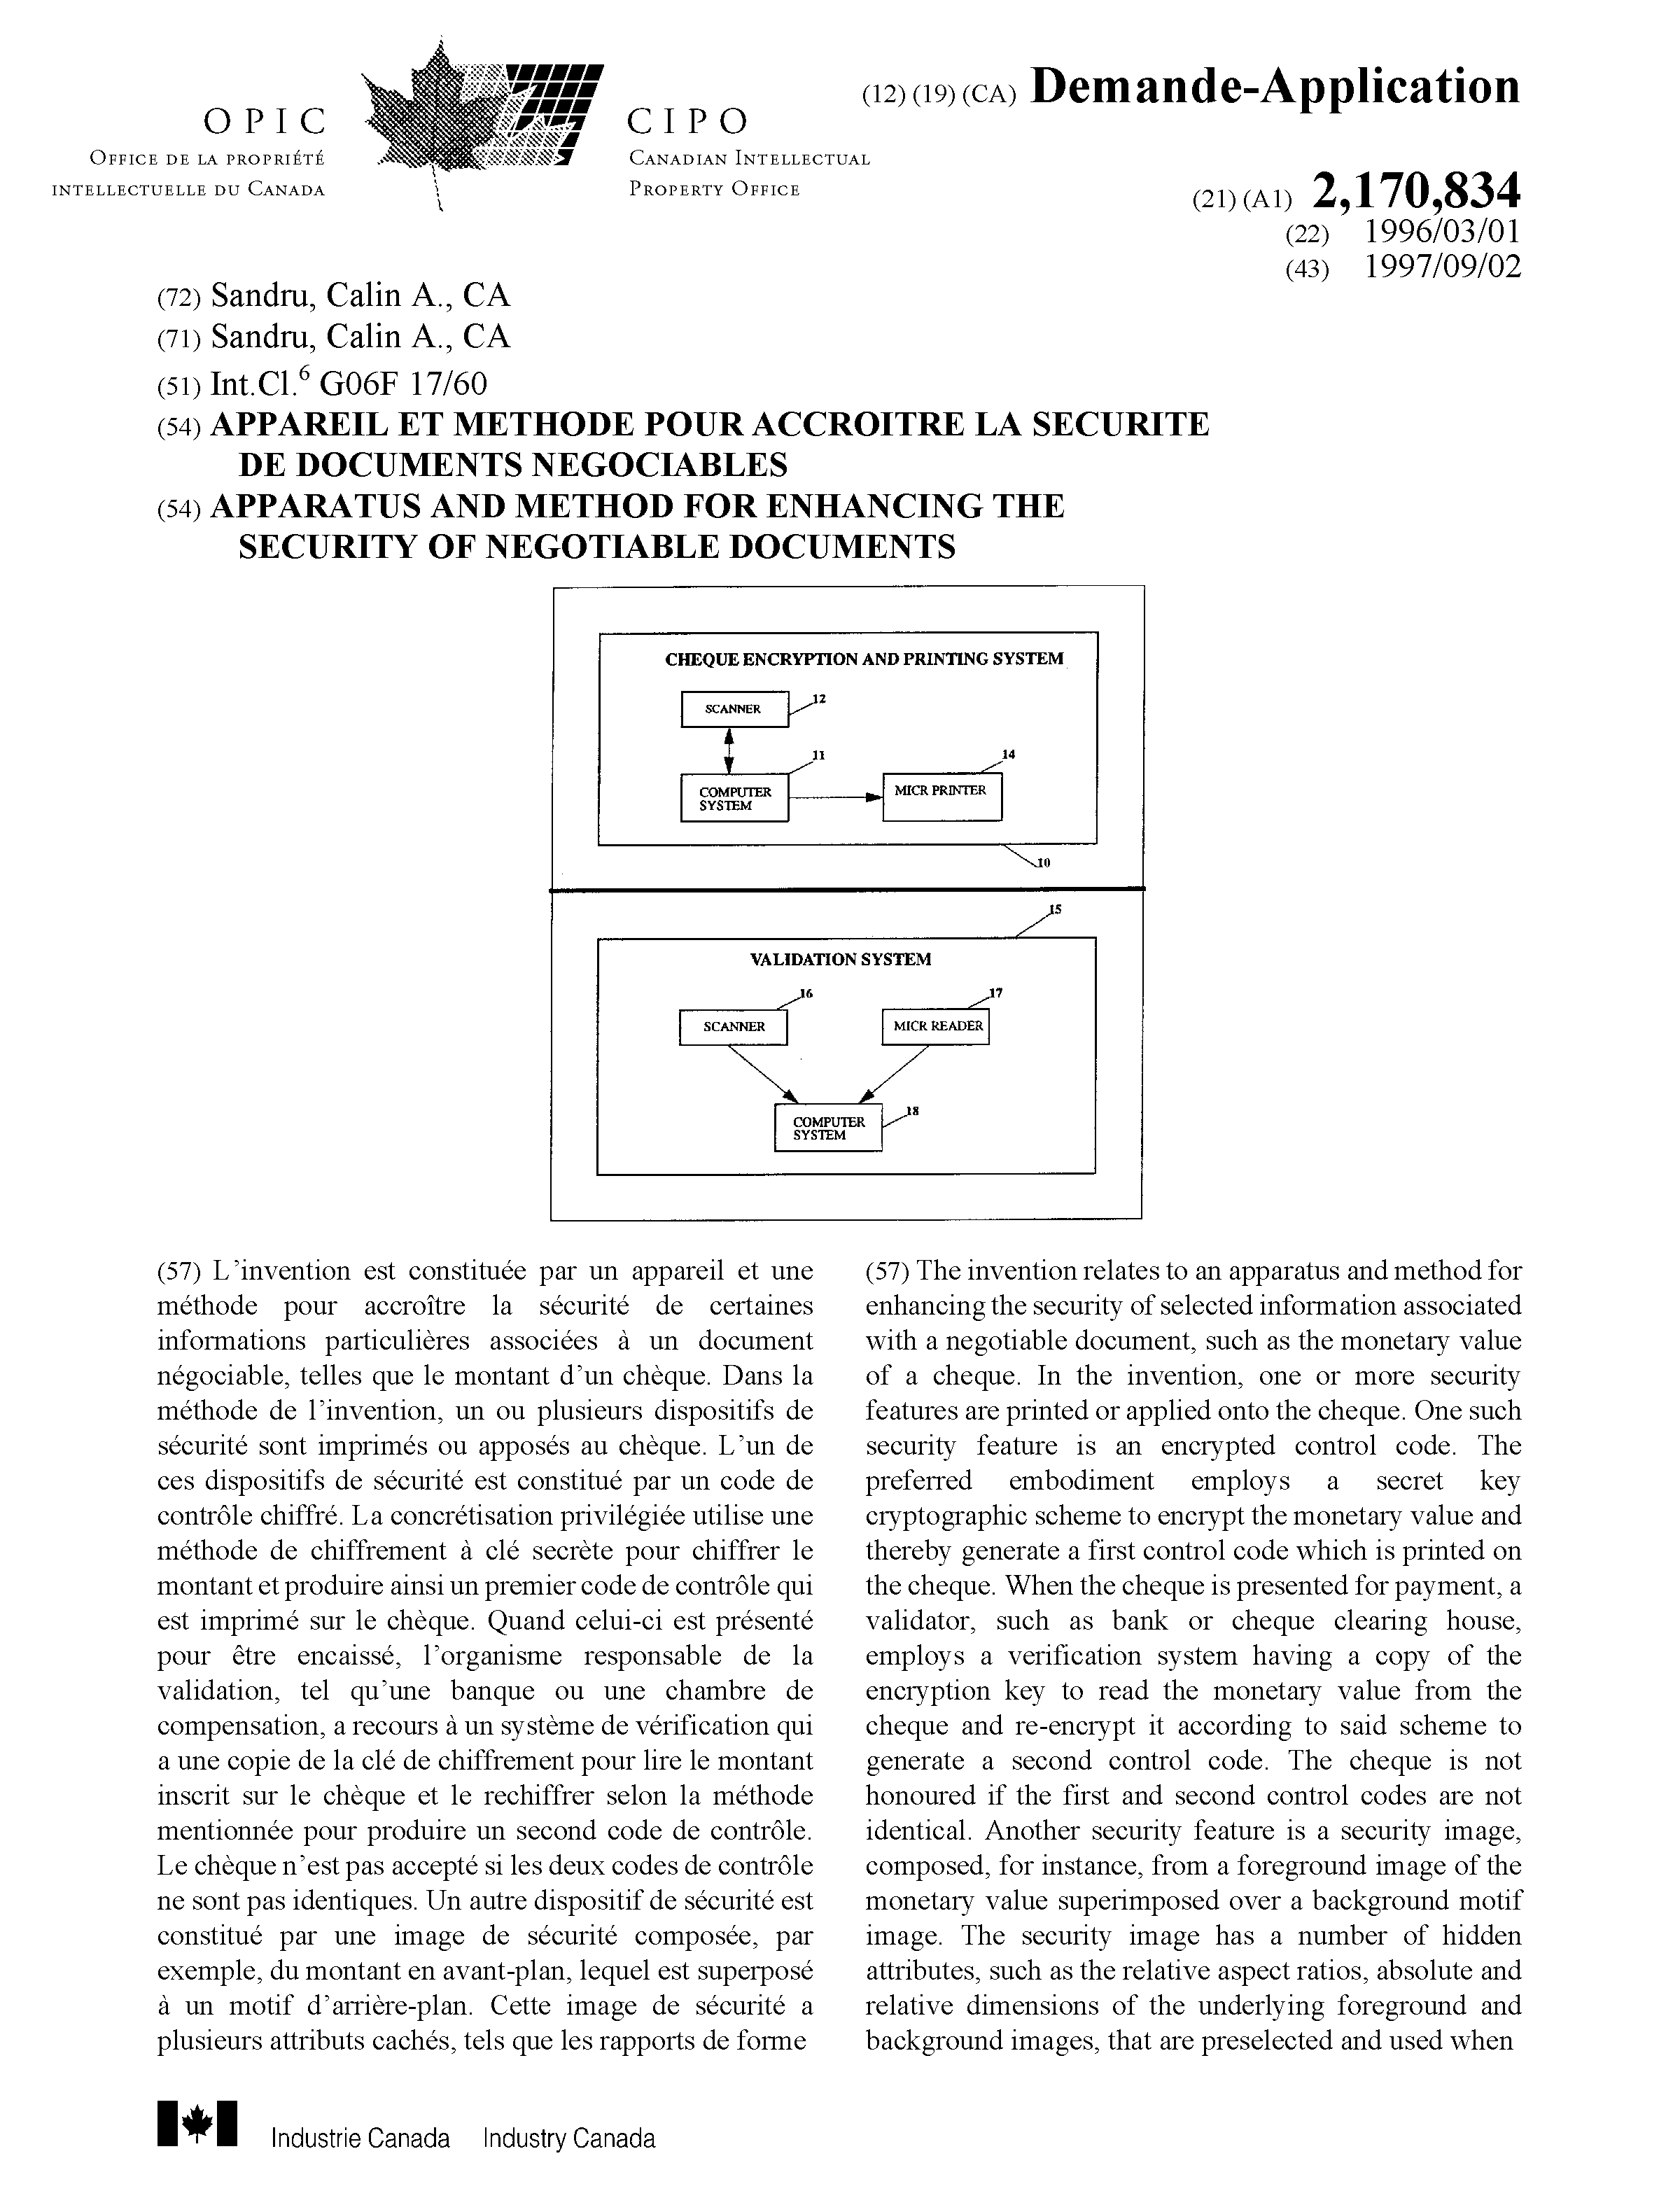 Document de brevet canadien 2170834. Page couverture 19991211. Image 1 de 2